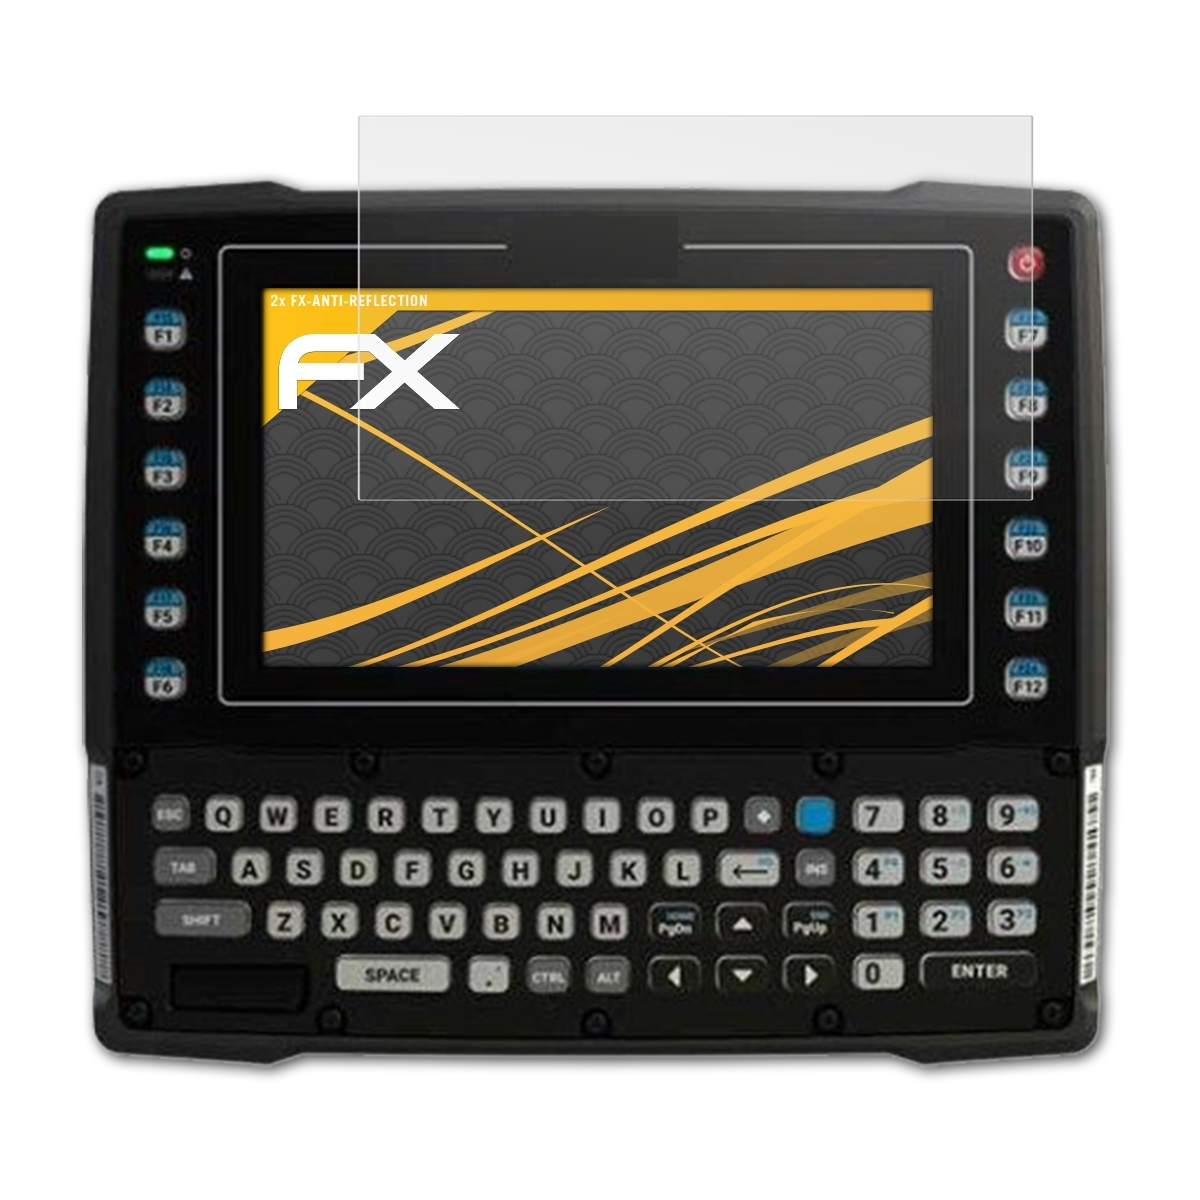 ATFOLIX 2x FX-Antireflex Displayschutz(für Zebra VC8300)